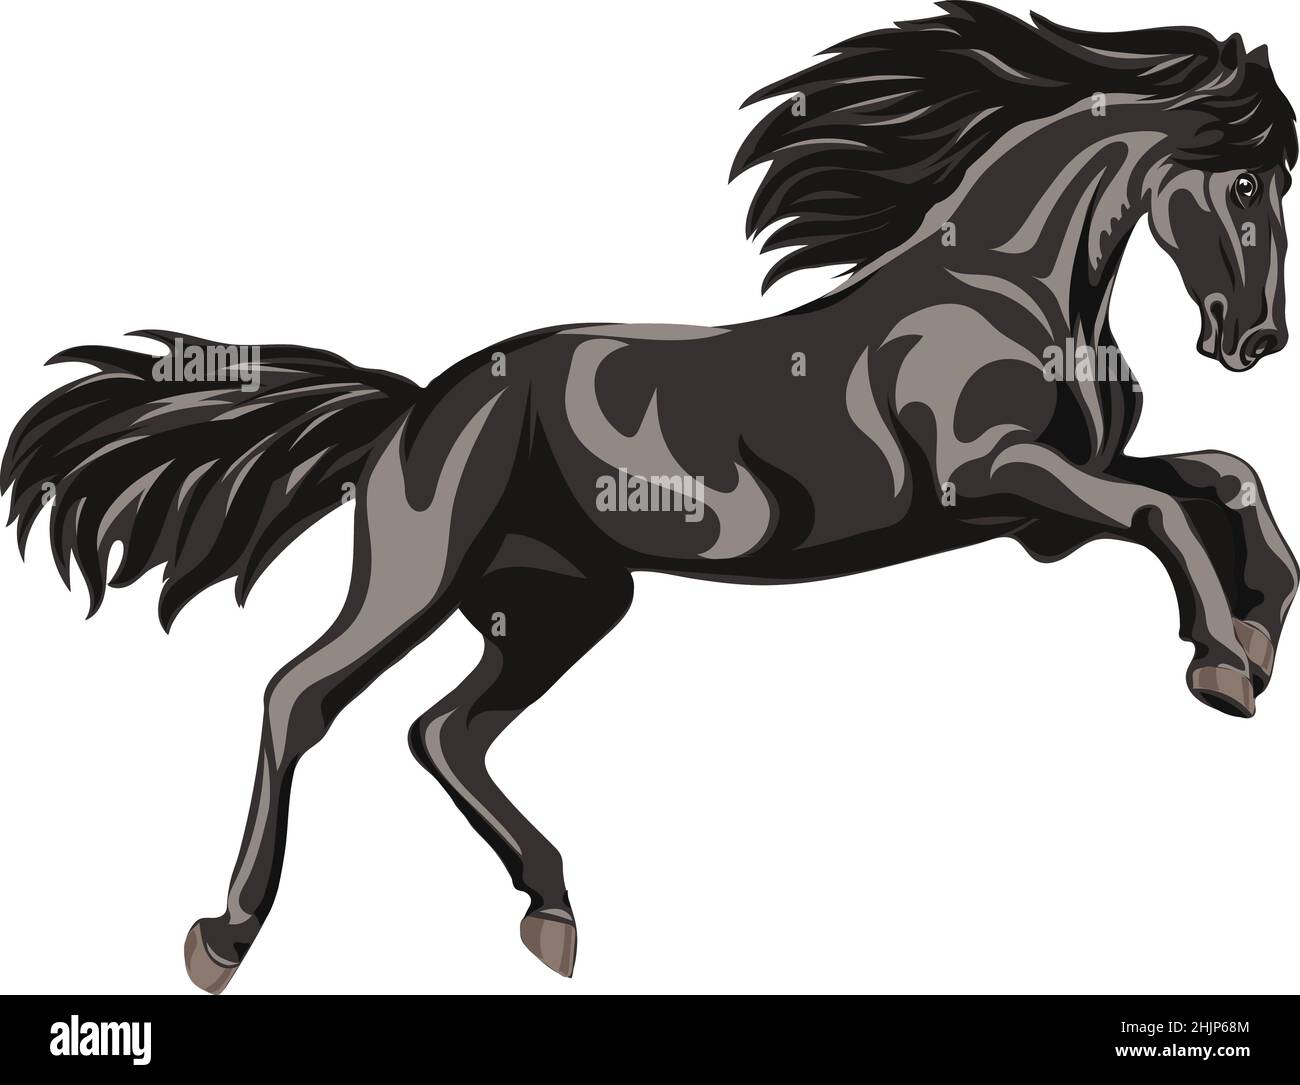 Cavallo, immagine di un cavallo galoppante, ritratto di un cavallo per un logo in toni neri Illustrazione Vettoriale